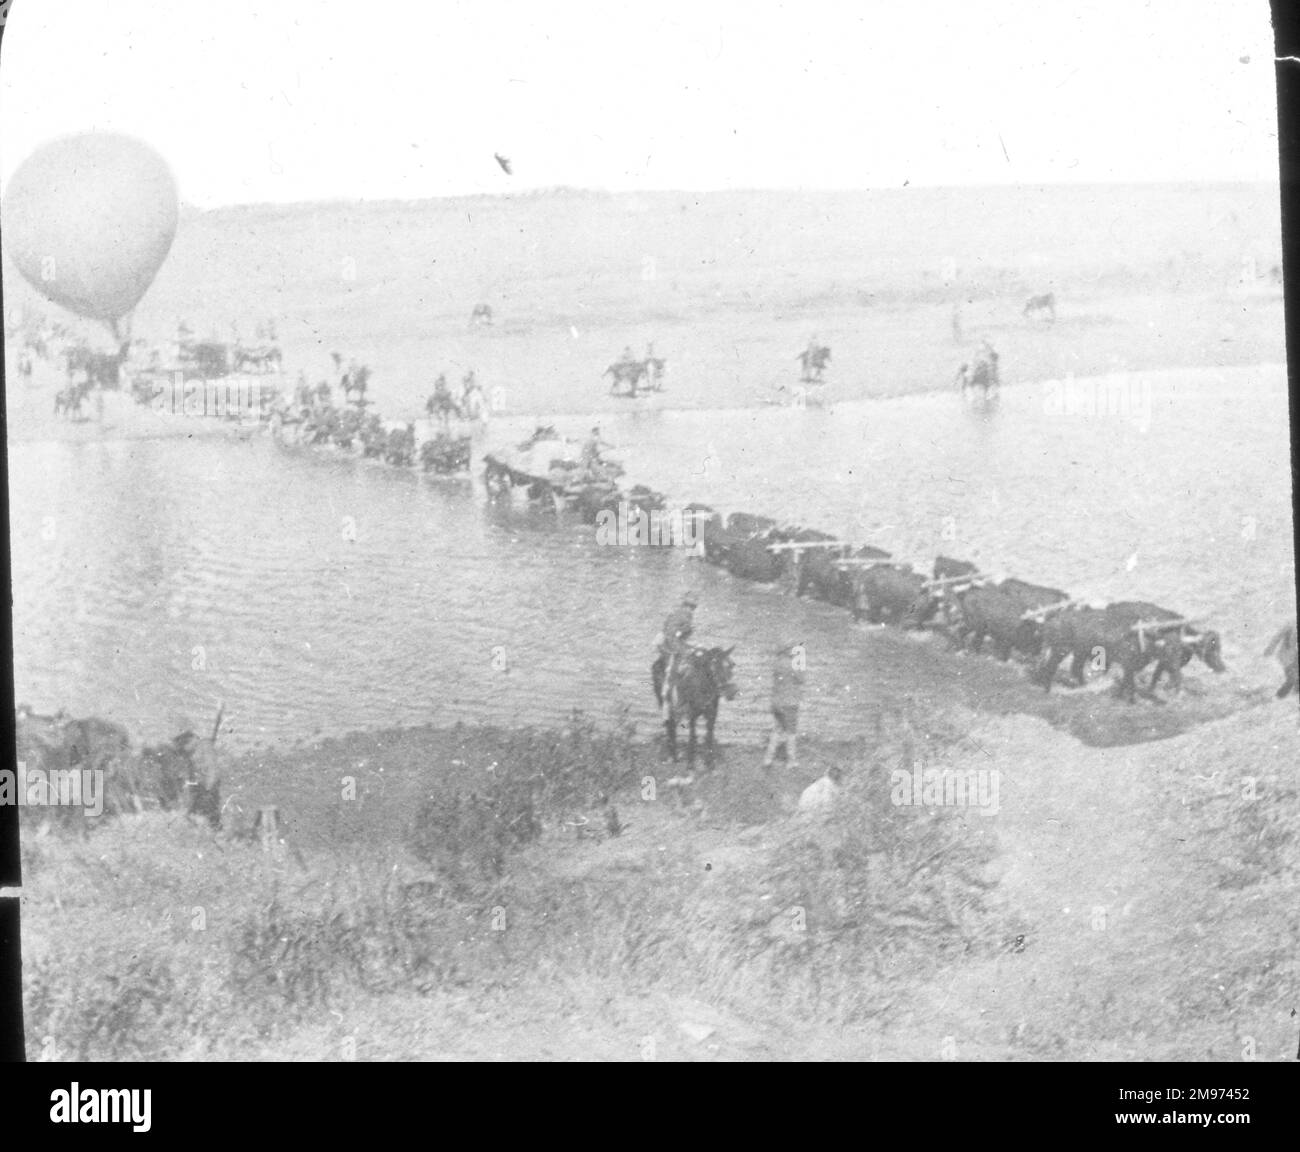 Schnappschuss eines Ballonkonvois, der eine Straße in Südafrika überquert, aufgenommen von W. Maxwell vom Standard. Böhlerkrieg. Stockfoto